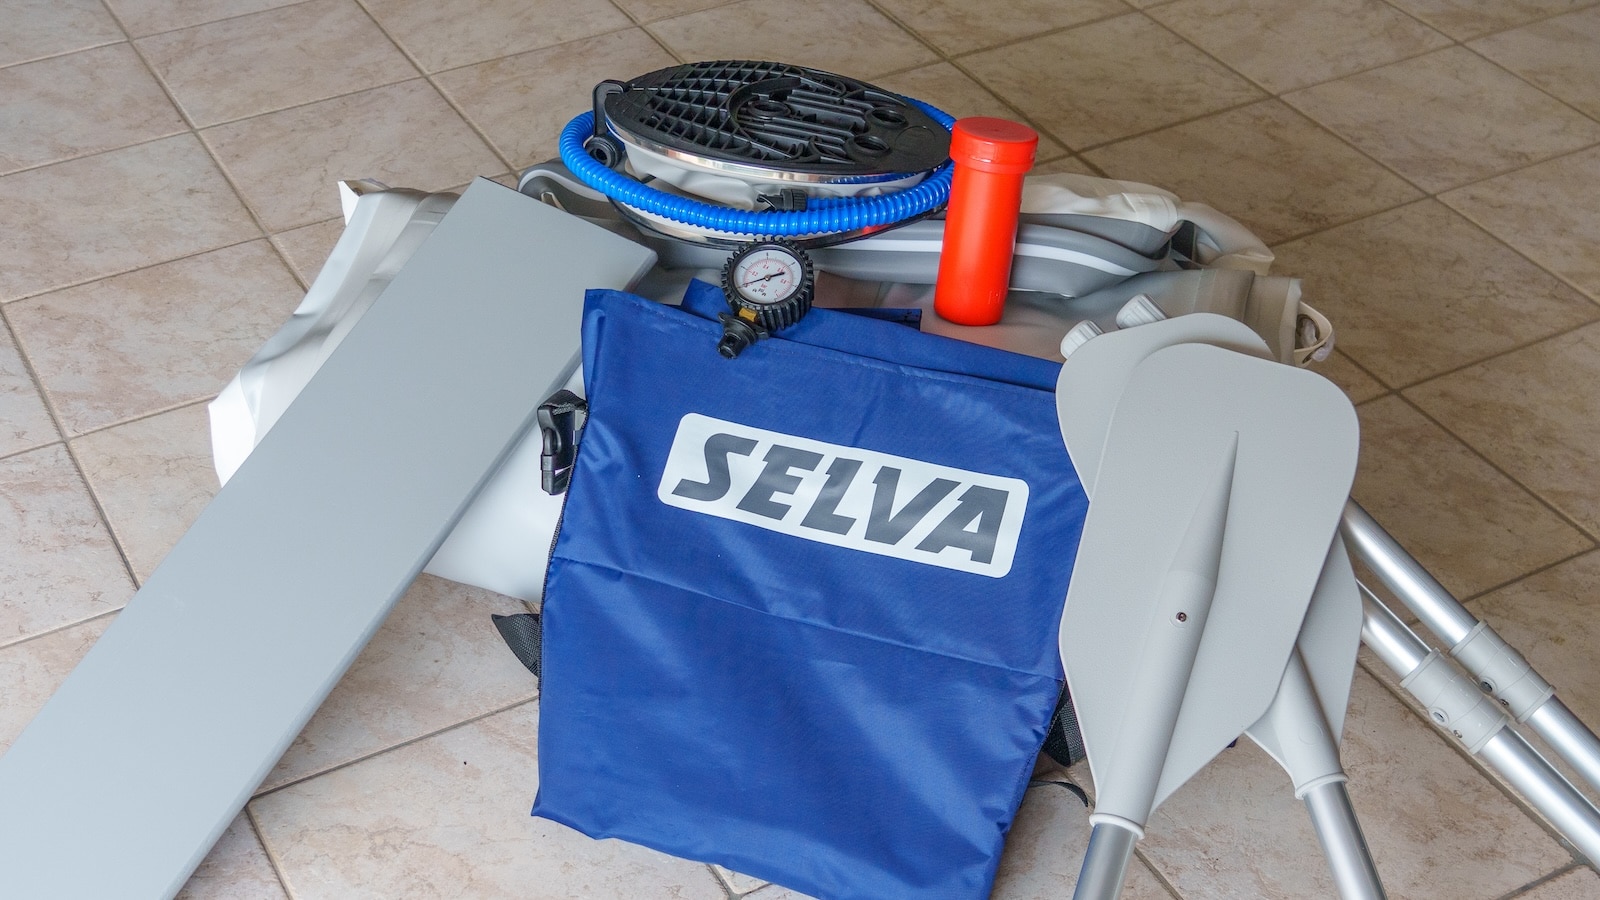 Selva T 230 VIB components